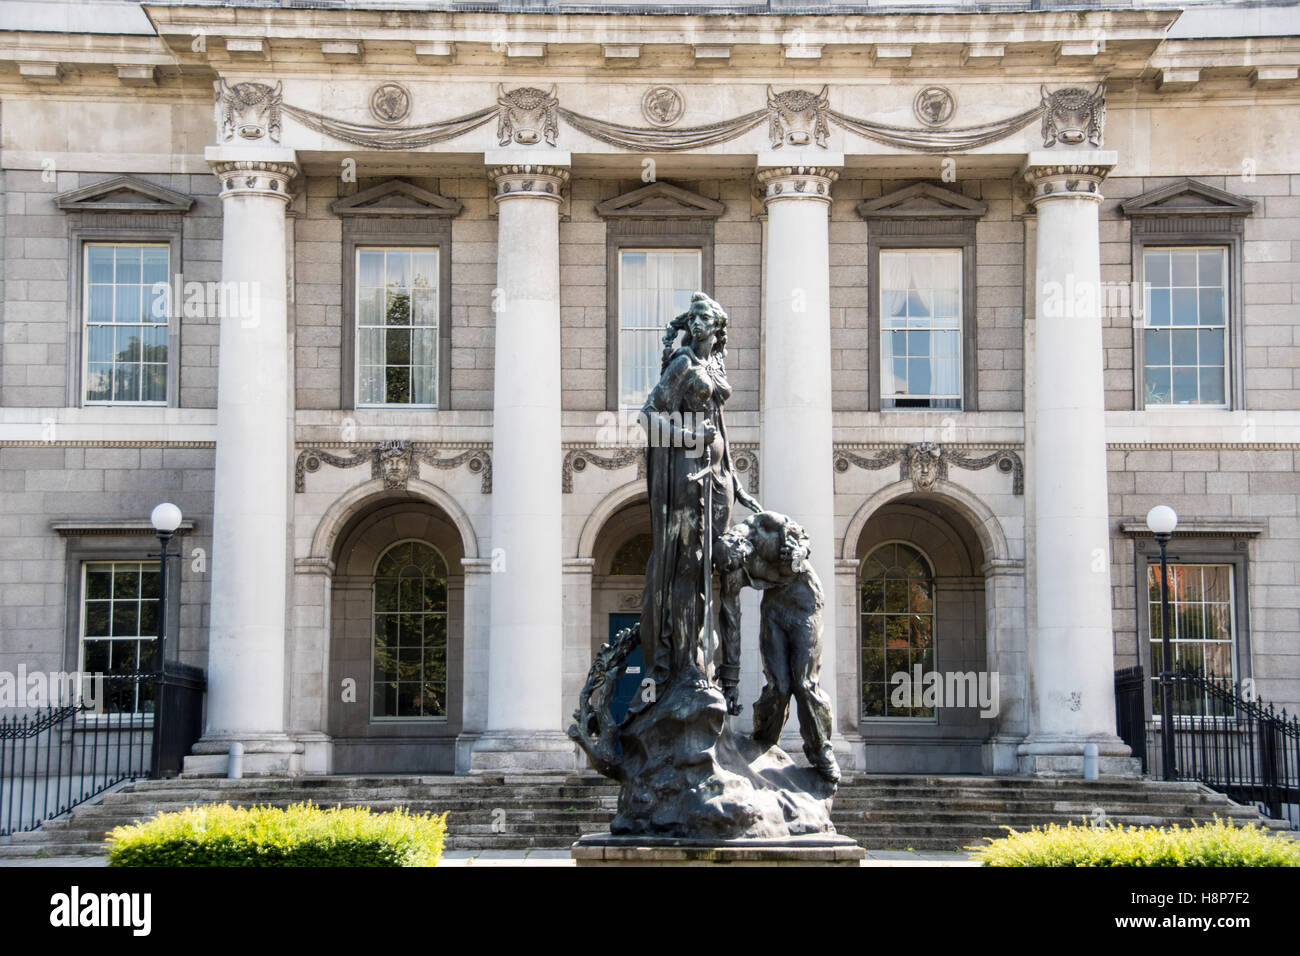 Dublín, Irlanda- Escultura fuera de la Custom House, de estilo neoclásico que data del siglo XVIII y en Dublín, Irlanda. Foto de stock